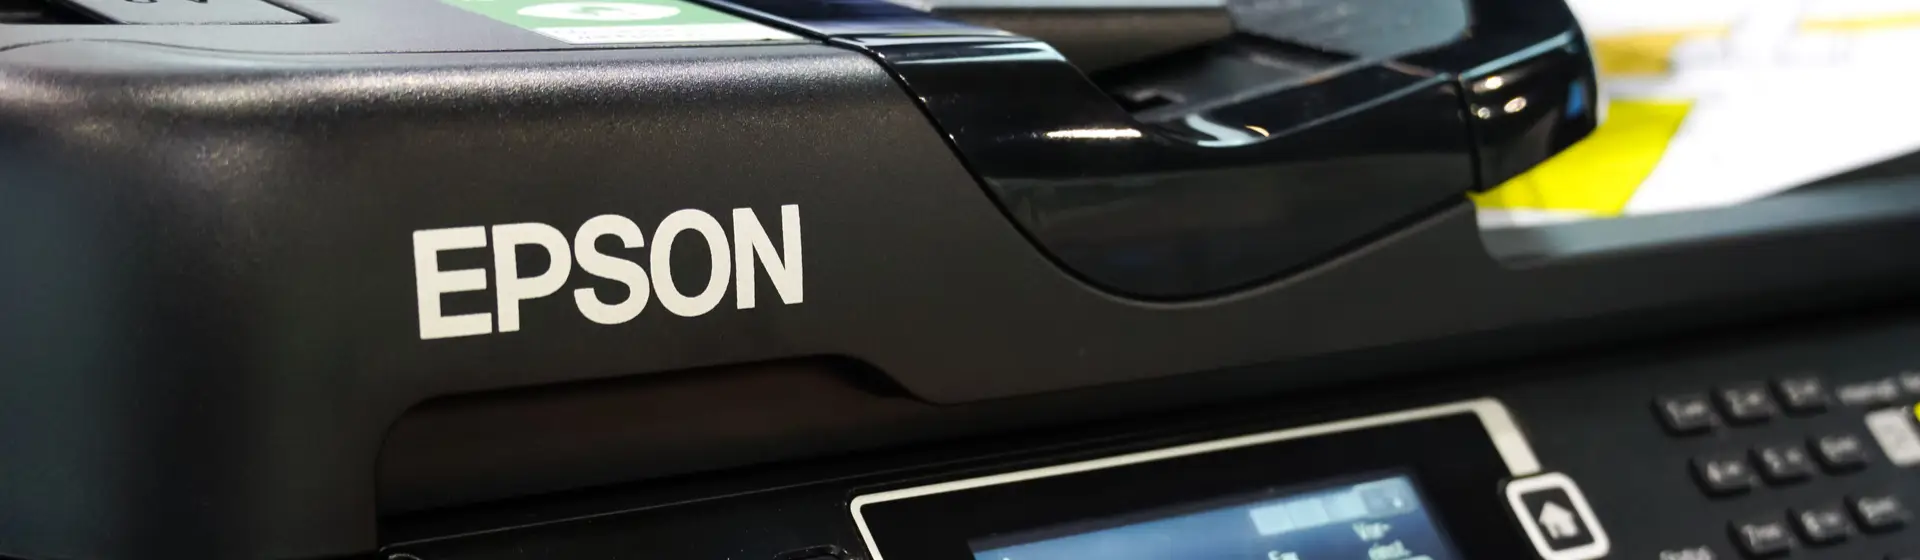 Melhor impressora Epson: conheça 10 ótimos modelos da marca